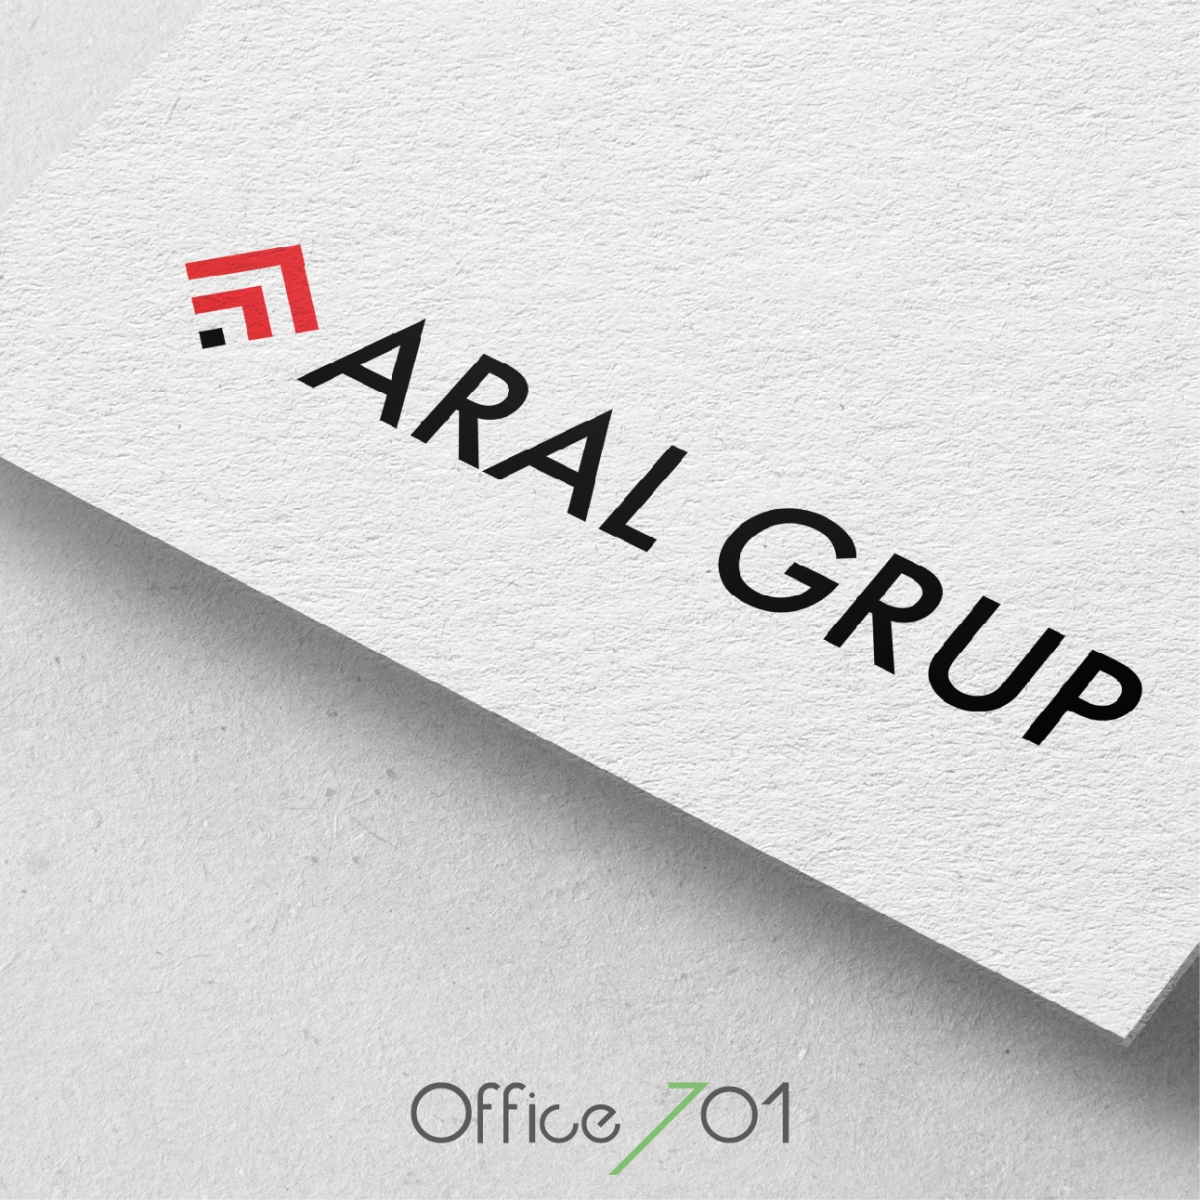 Office701 | Aral Grup Logo Tasarımı